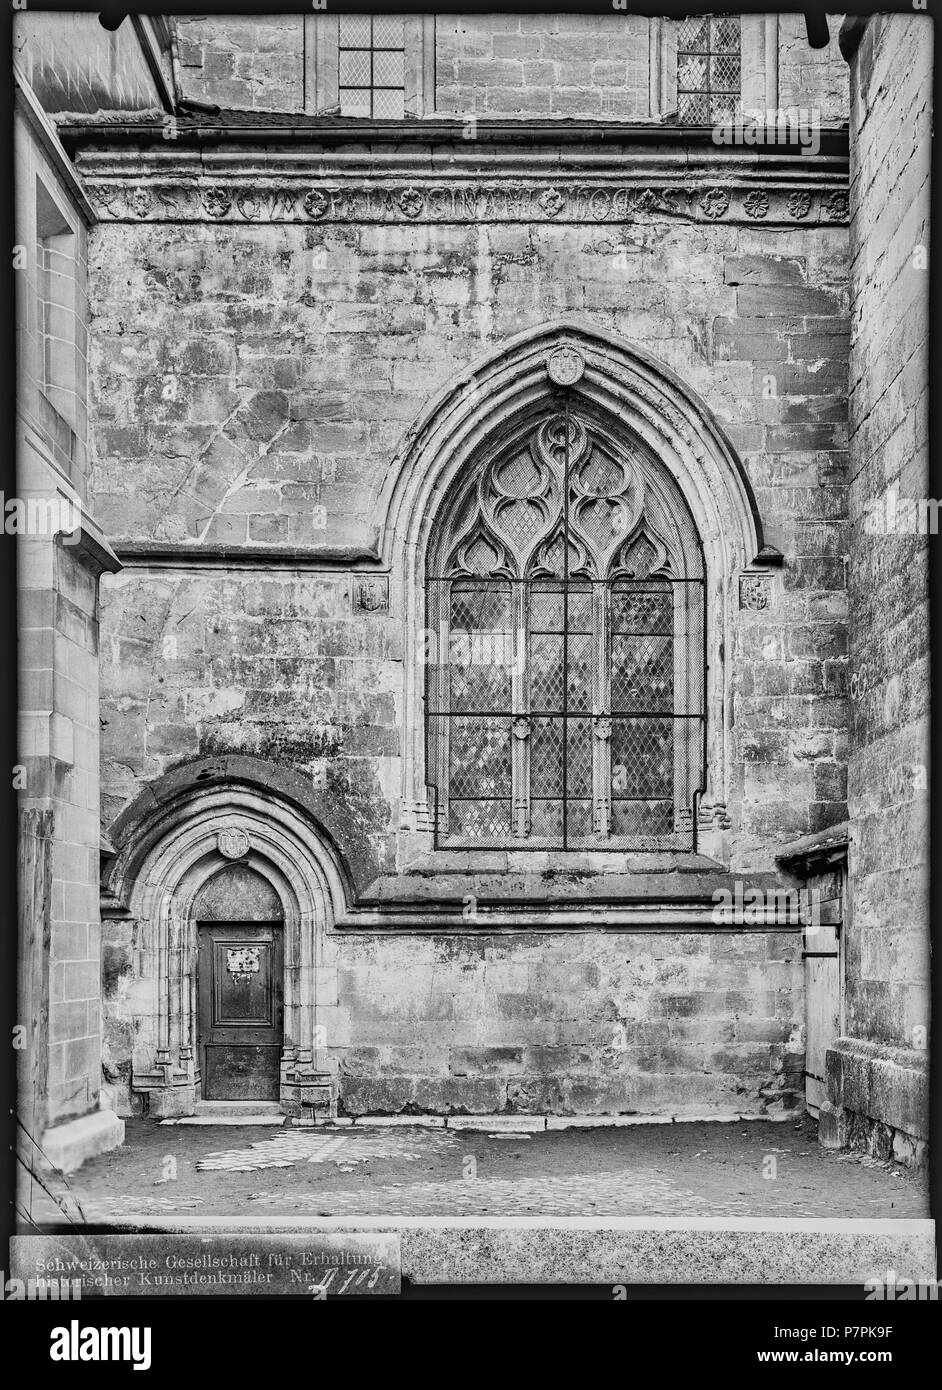 74 CH-NB - Lausanne, Cathédrale protestante Notre-Dame, vue partielle extérieure - Collection Max van Berchem - EAD-7292 Stock Photo